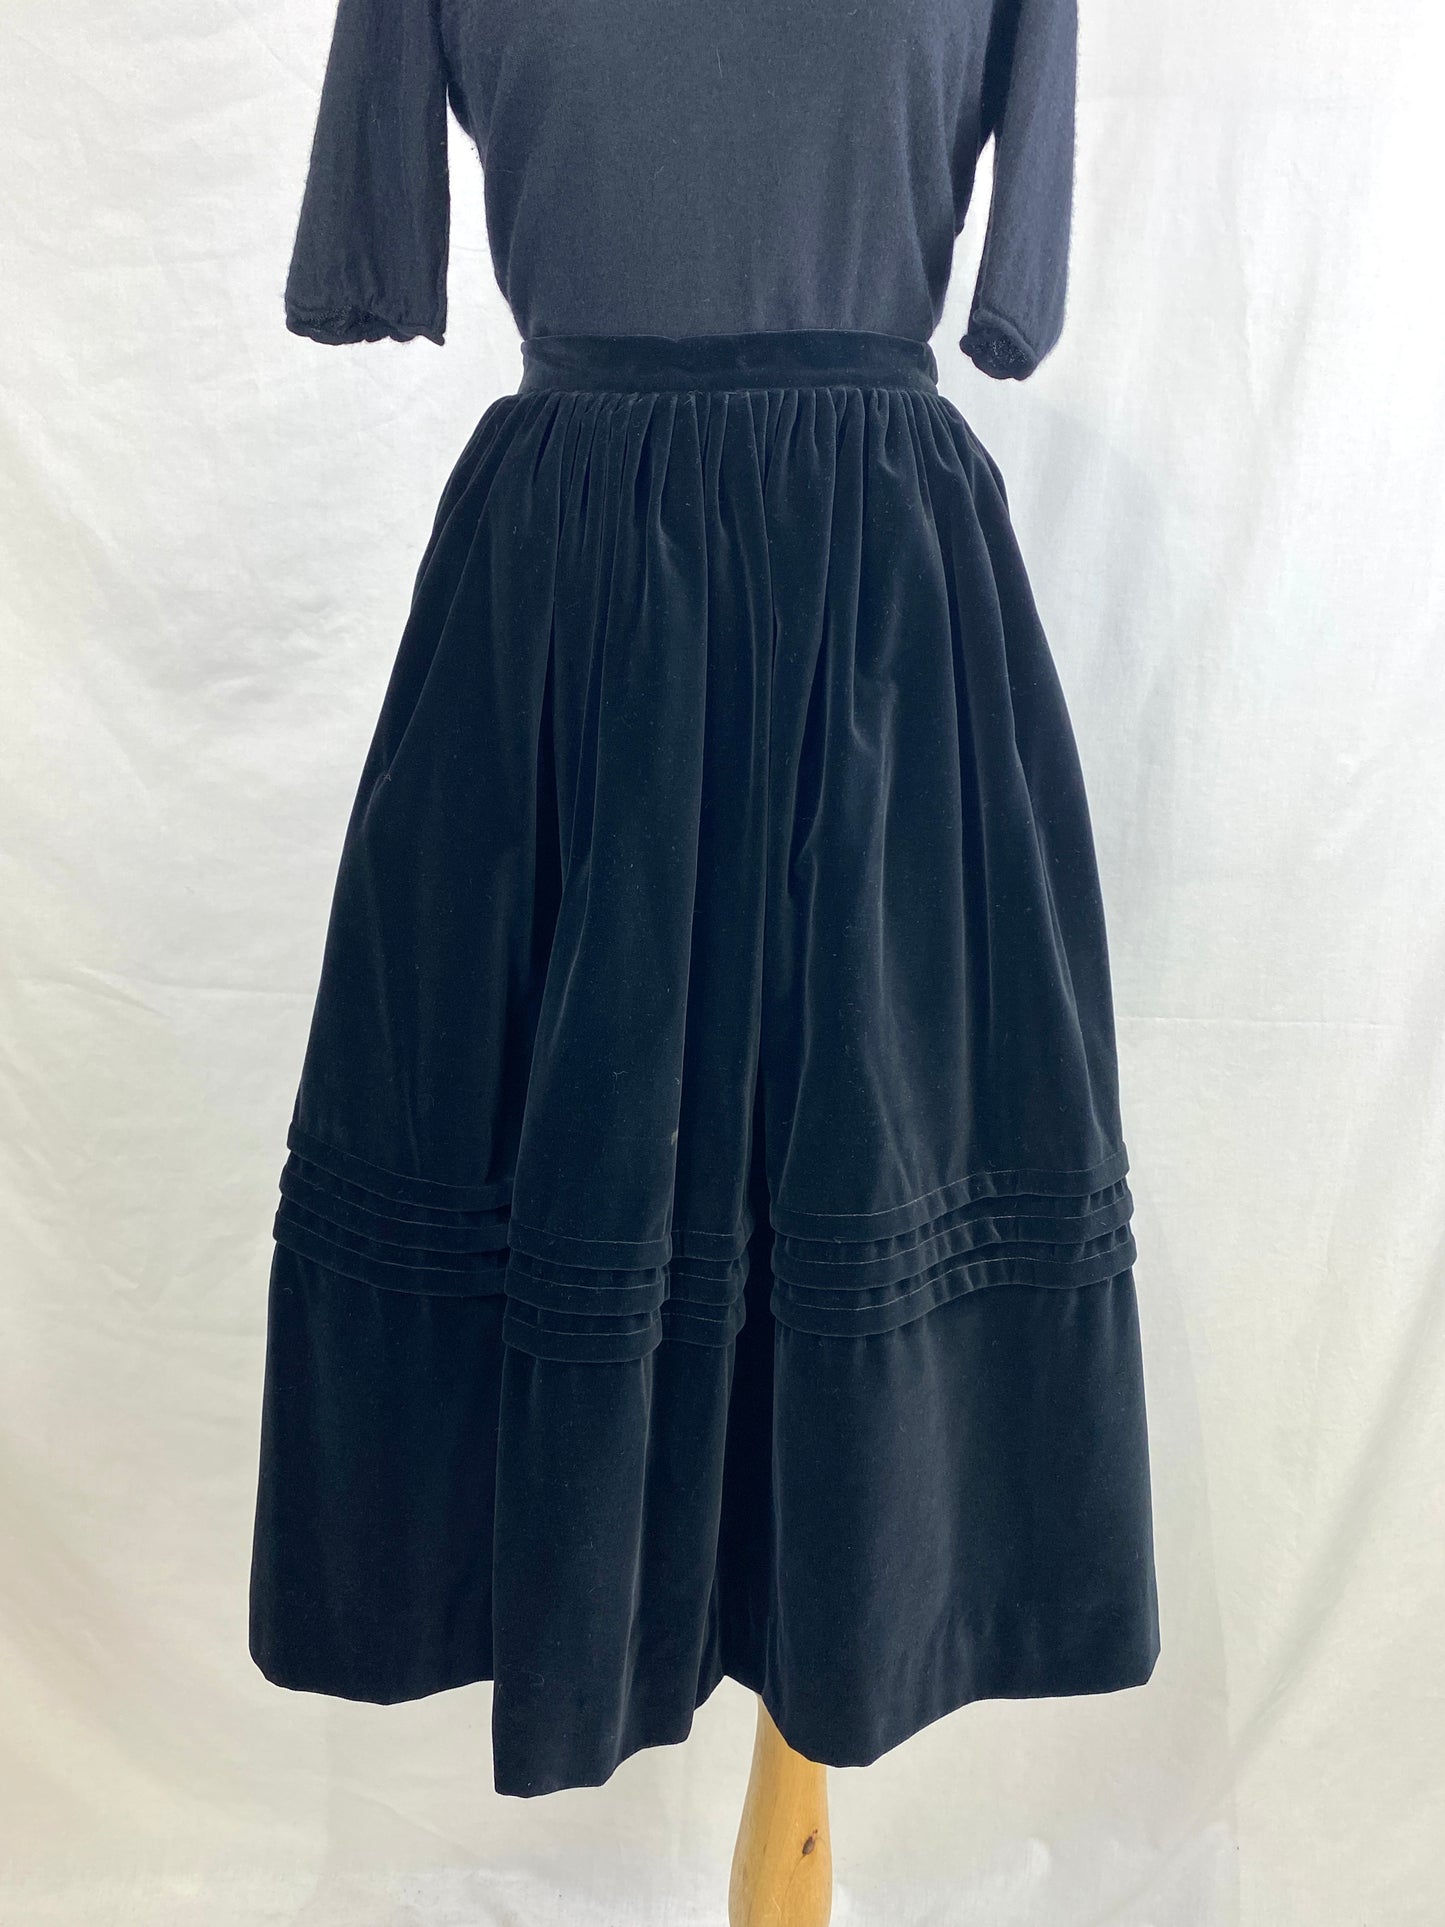 Vintage 1950s Black Velour Full Skirt, Medium